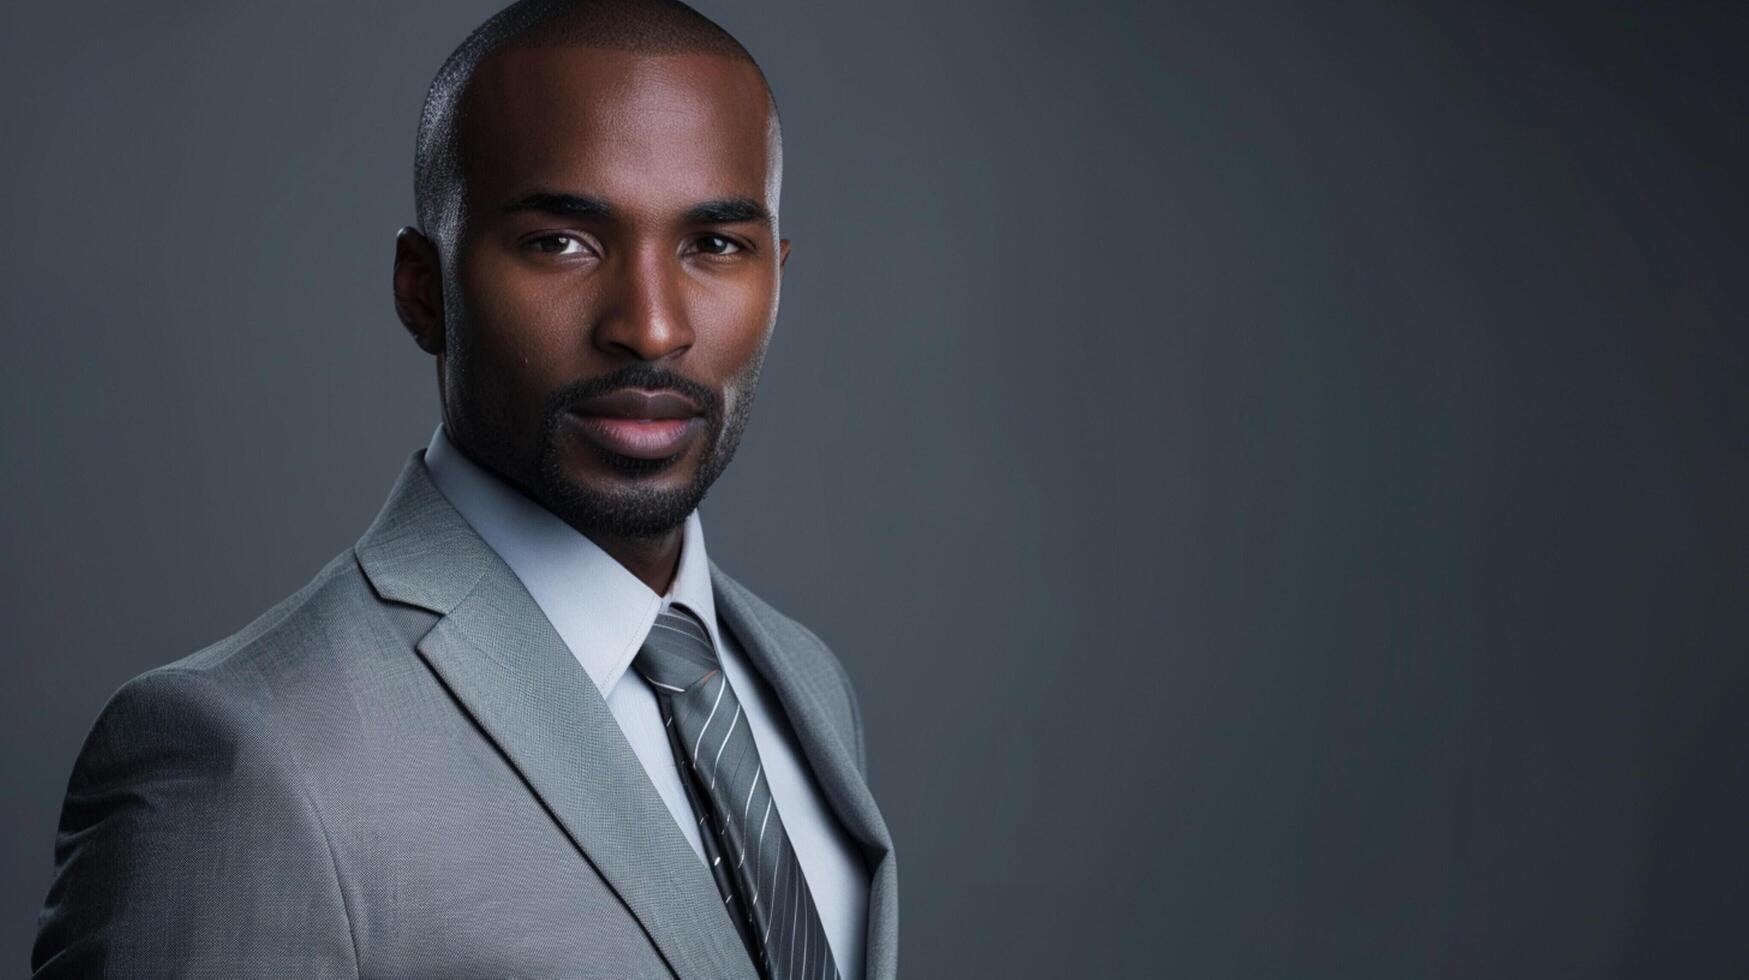 africano americano empresario en gris traje estudio foto